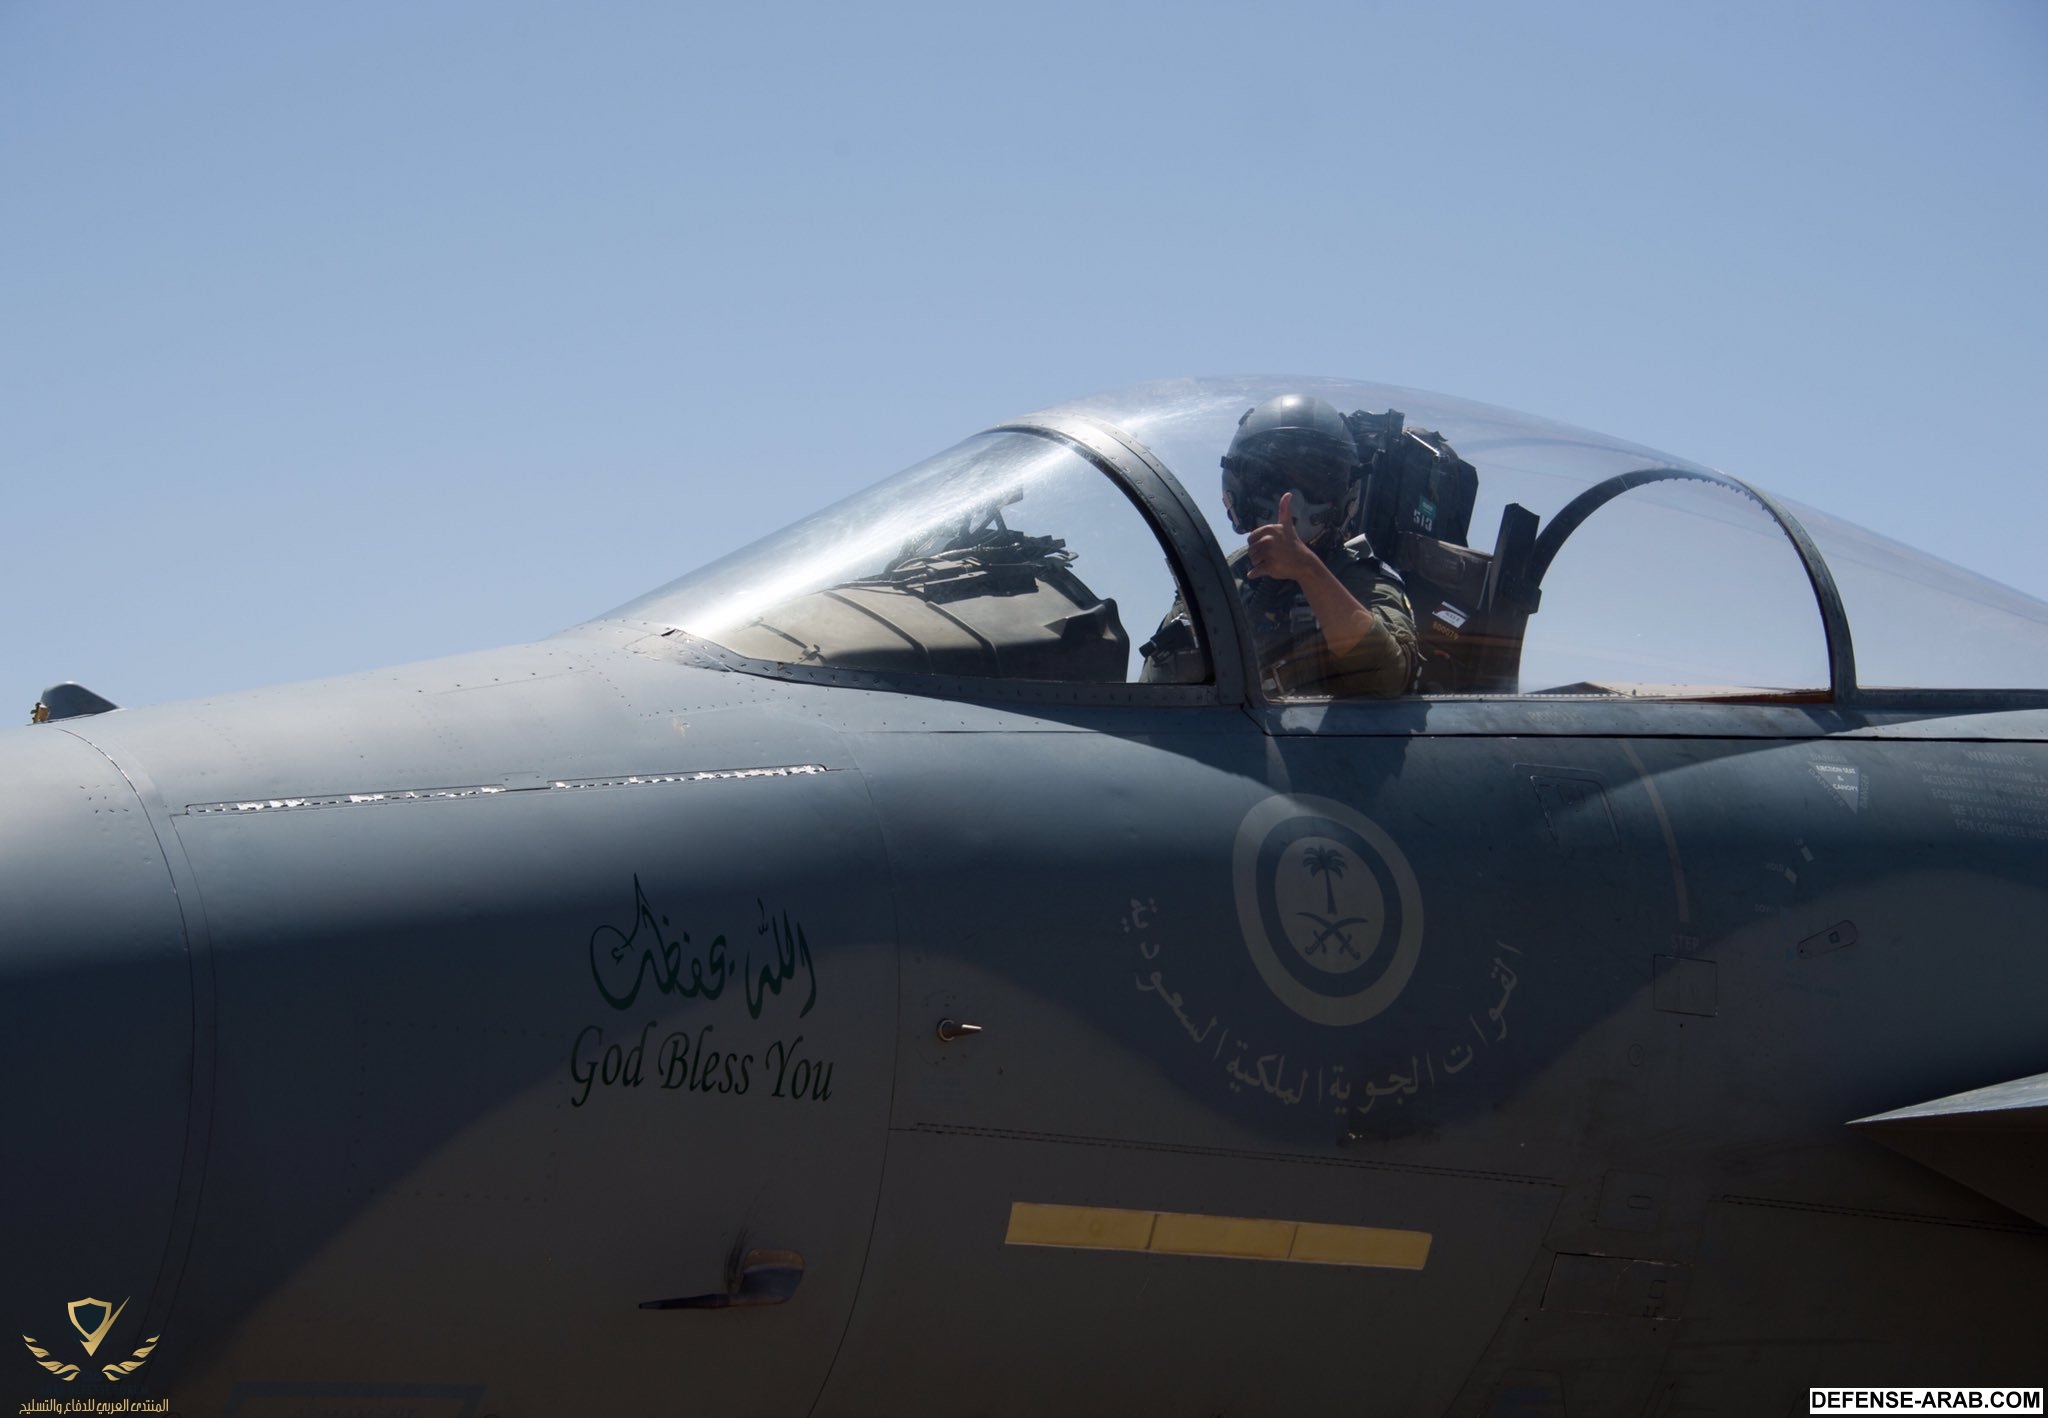 السعودية تزيد رواتب طياري سلاح الجو بما يصل إلى 60 الصفحة 3 Defense Arab المنتدى العربي للدفاع والتسليح